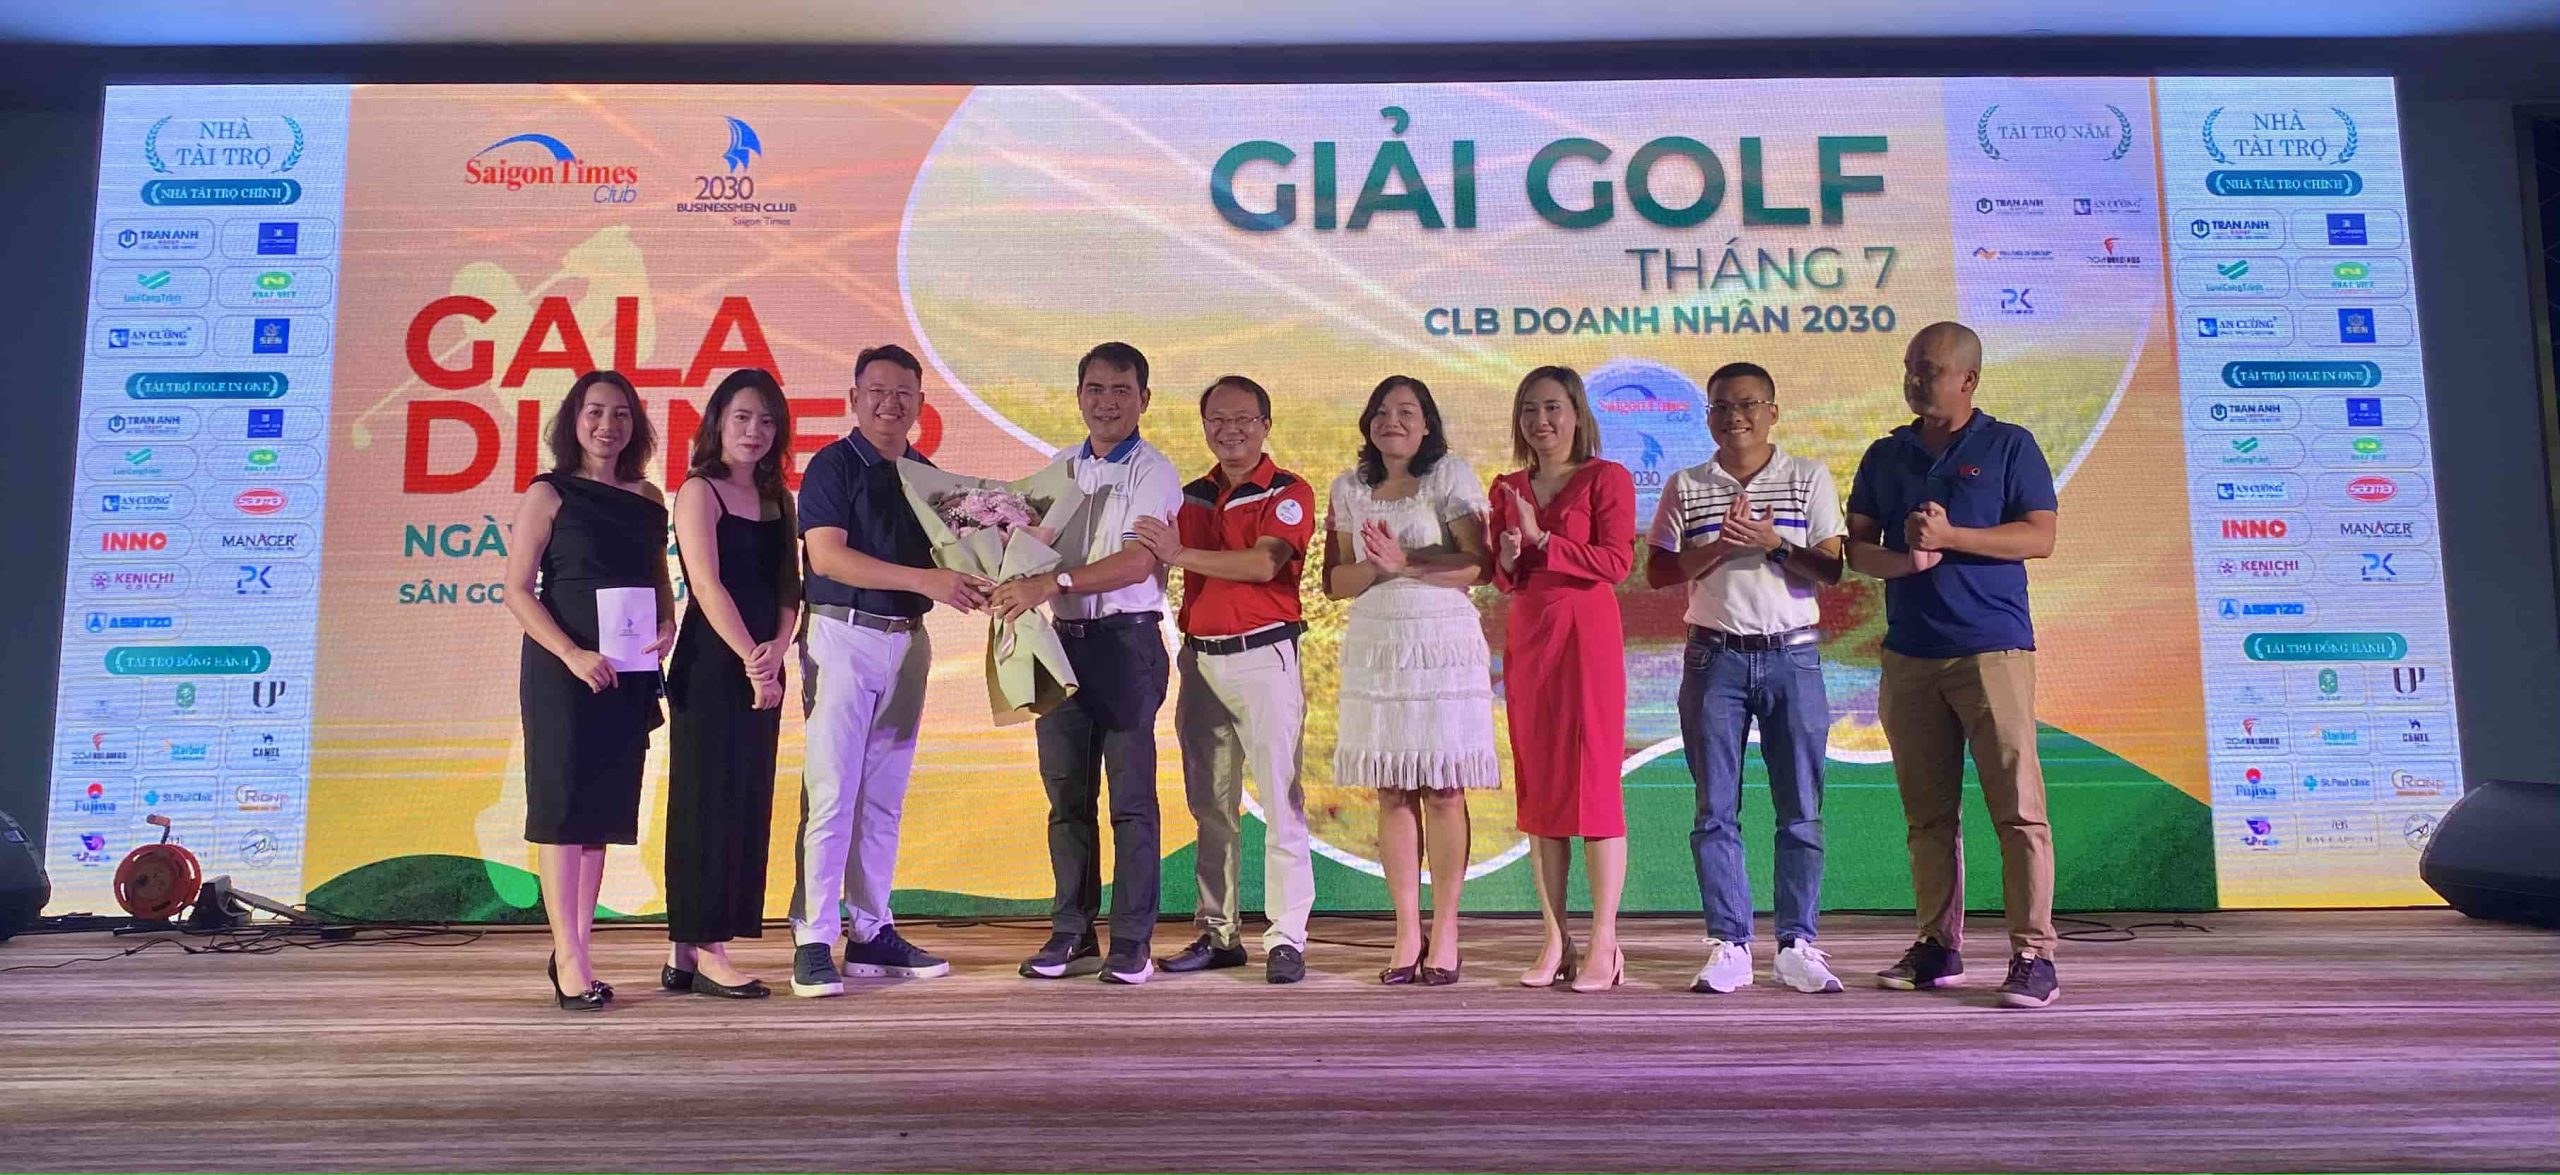 Câu lạc bộ Doanh nhân 2030 tổ chức Giải Golf tháng 7 với tổng giá trị giải thưởng hơn 4,5 tỉ đồng